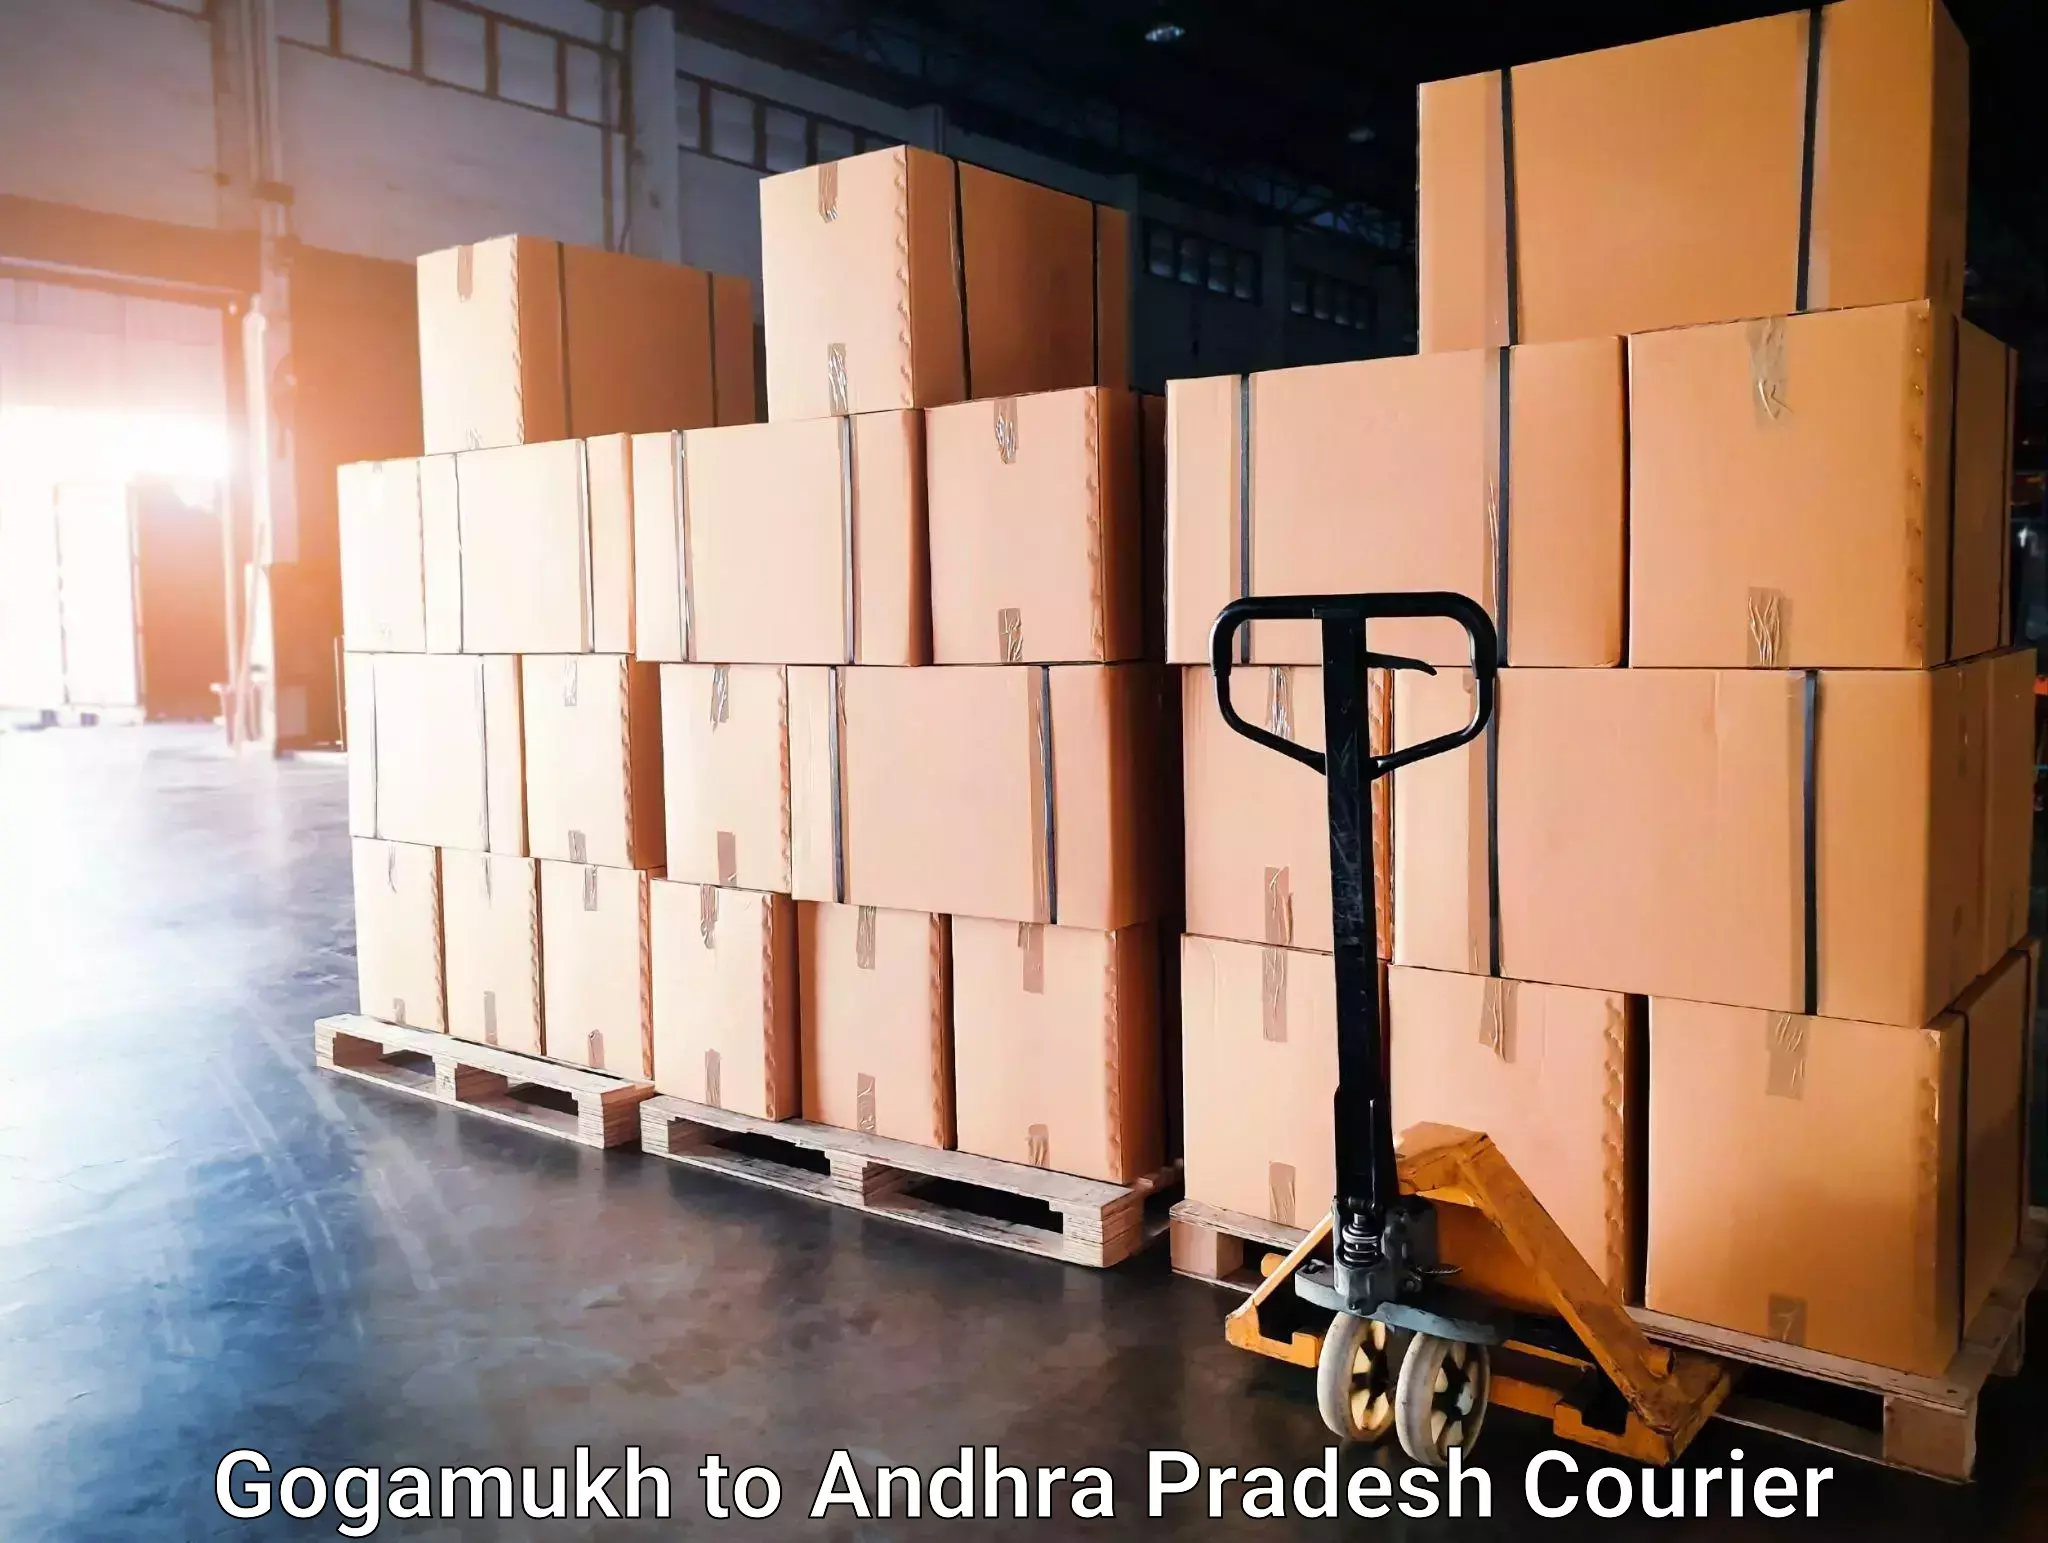 Nationwide shipping capabilities Gogamukh to Kakinada